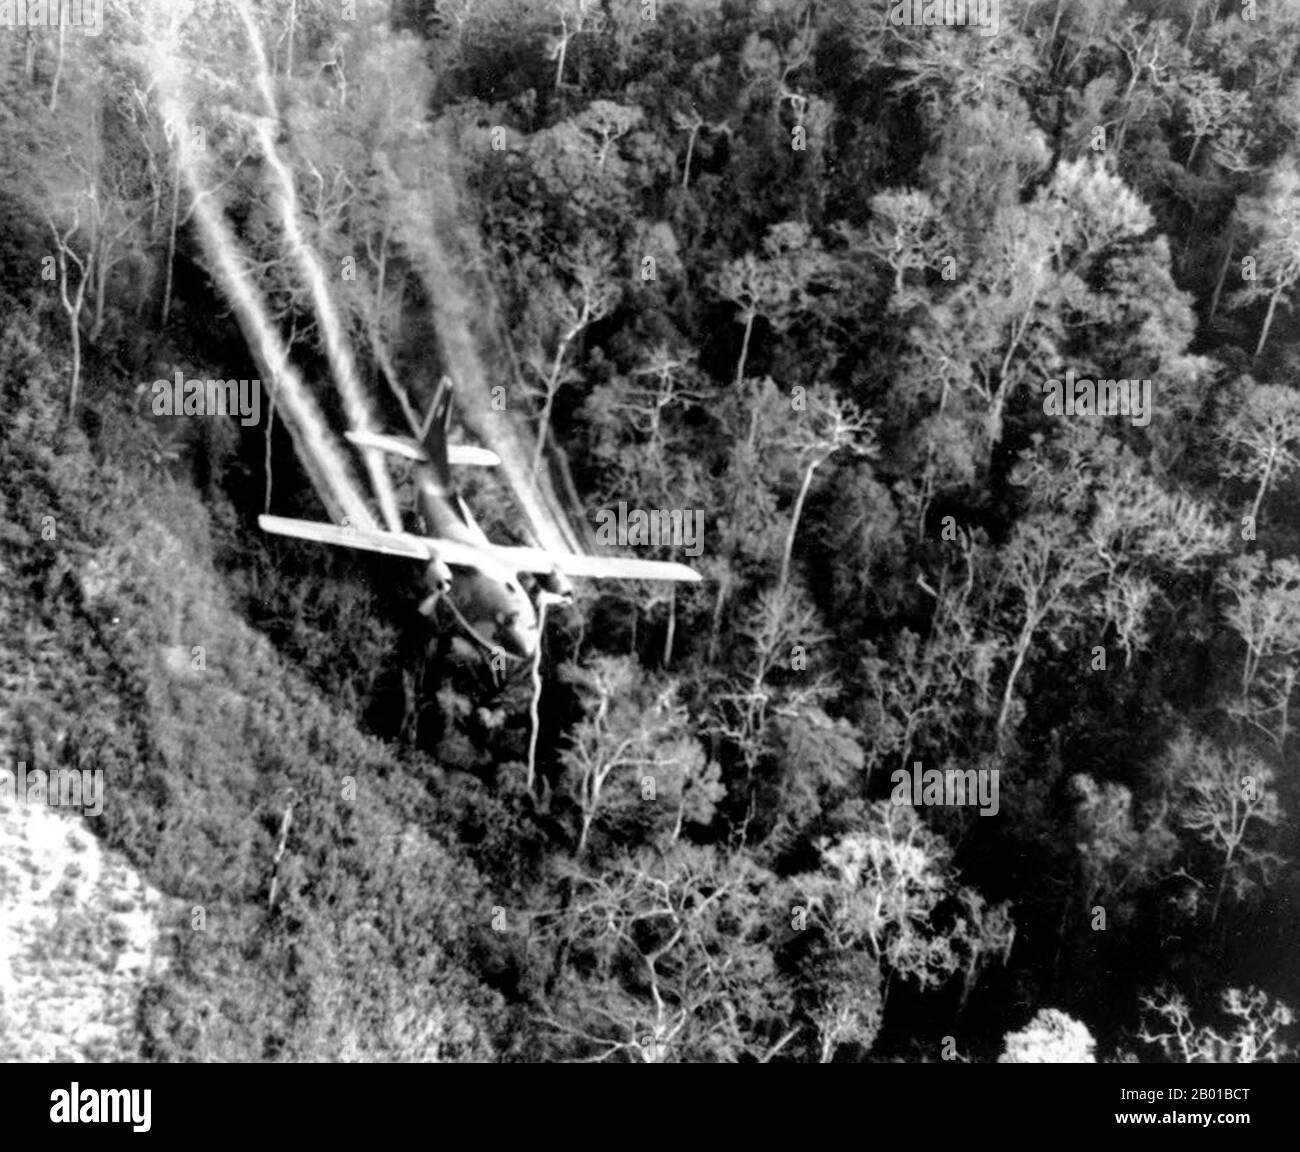 Vietnam: Una forza aerea statunitense C-123 vola basso lungo una strada del Vietnam del Sud mentre spruzzano defolianti sulla fitta giungla di crescita per eliminare i siti di imboscata per l'NLF (Viet Cong) durante la guerra del Vietnam, maggio 1966. La seconda guerra indochina, conosciuta in America come la guerra del Vietnam, fu un conflitto militare dell'epoca della guerra fredda che si verificò in Vietnam, Laos e Cambogia dal 1 novembre 1955 alla caduta di Saigon il 30 aprile 1975. Questa guerra seguì la prima Guerra d'Indocina e fu combattuta tra il Vietnam del Nord, sostenuto dai suoi alleati comunisti, e il governo del Vietnam del Sud, sostenuto dagli Stati Uniti Foto Stock